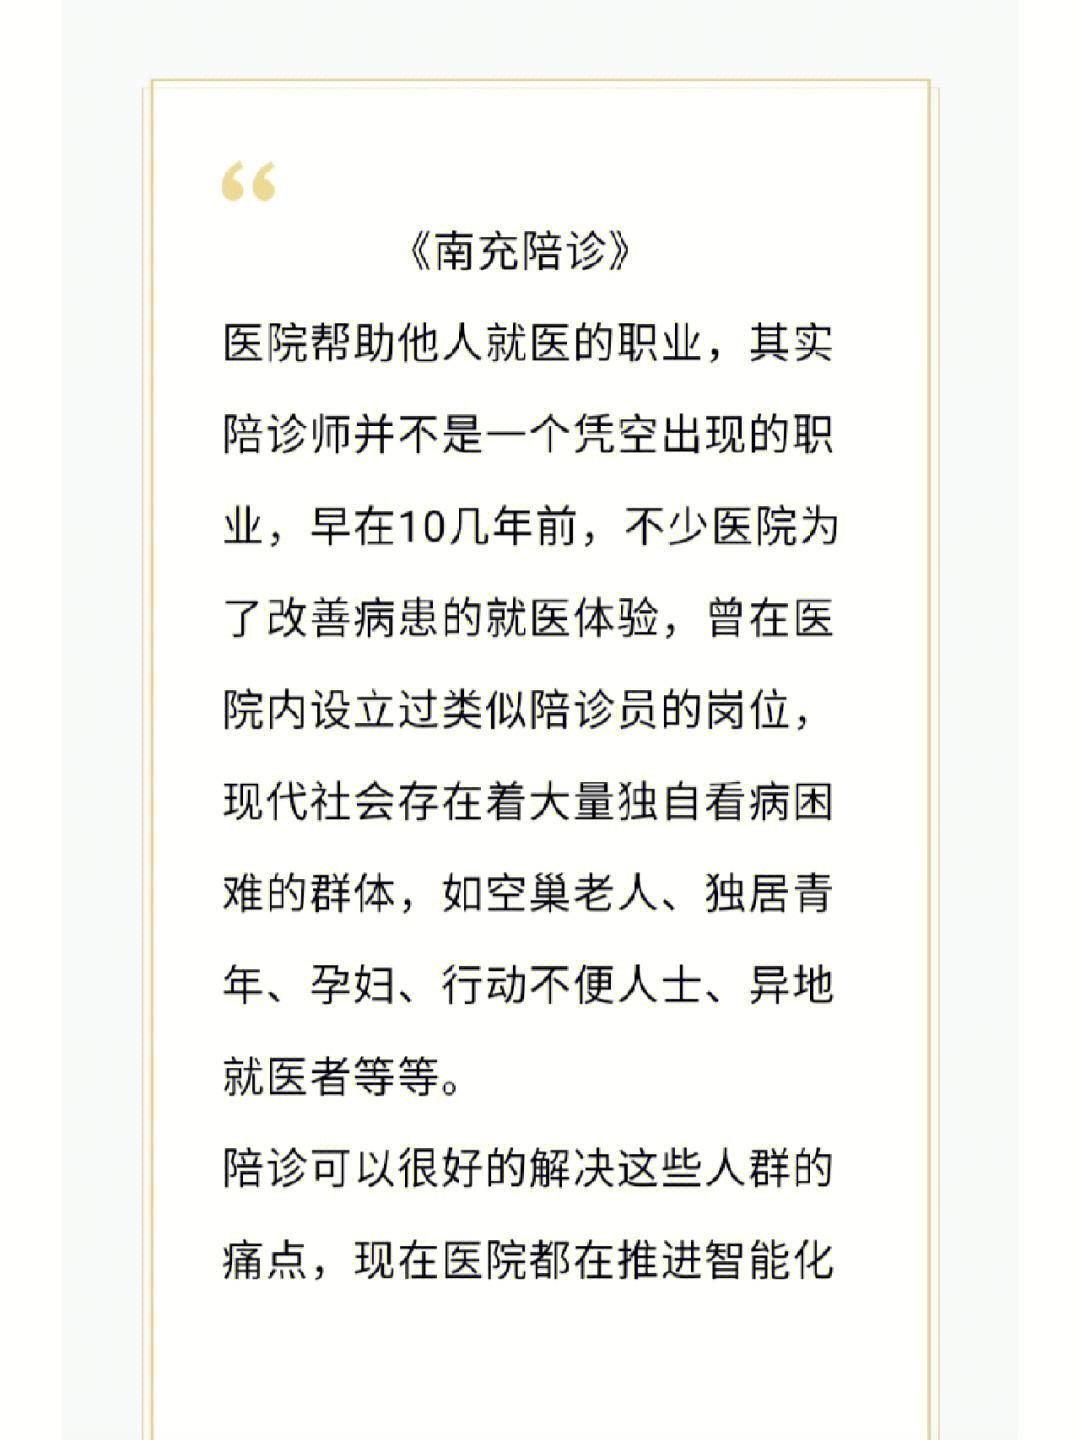 关于中国人民解放军第421医院医院跑腿陪诊挂号，您满意我安心的信息